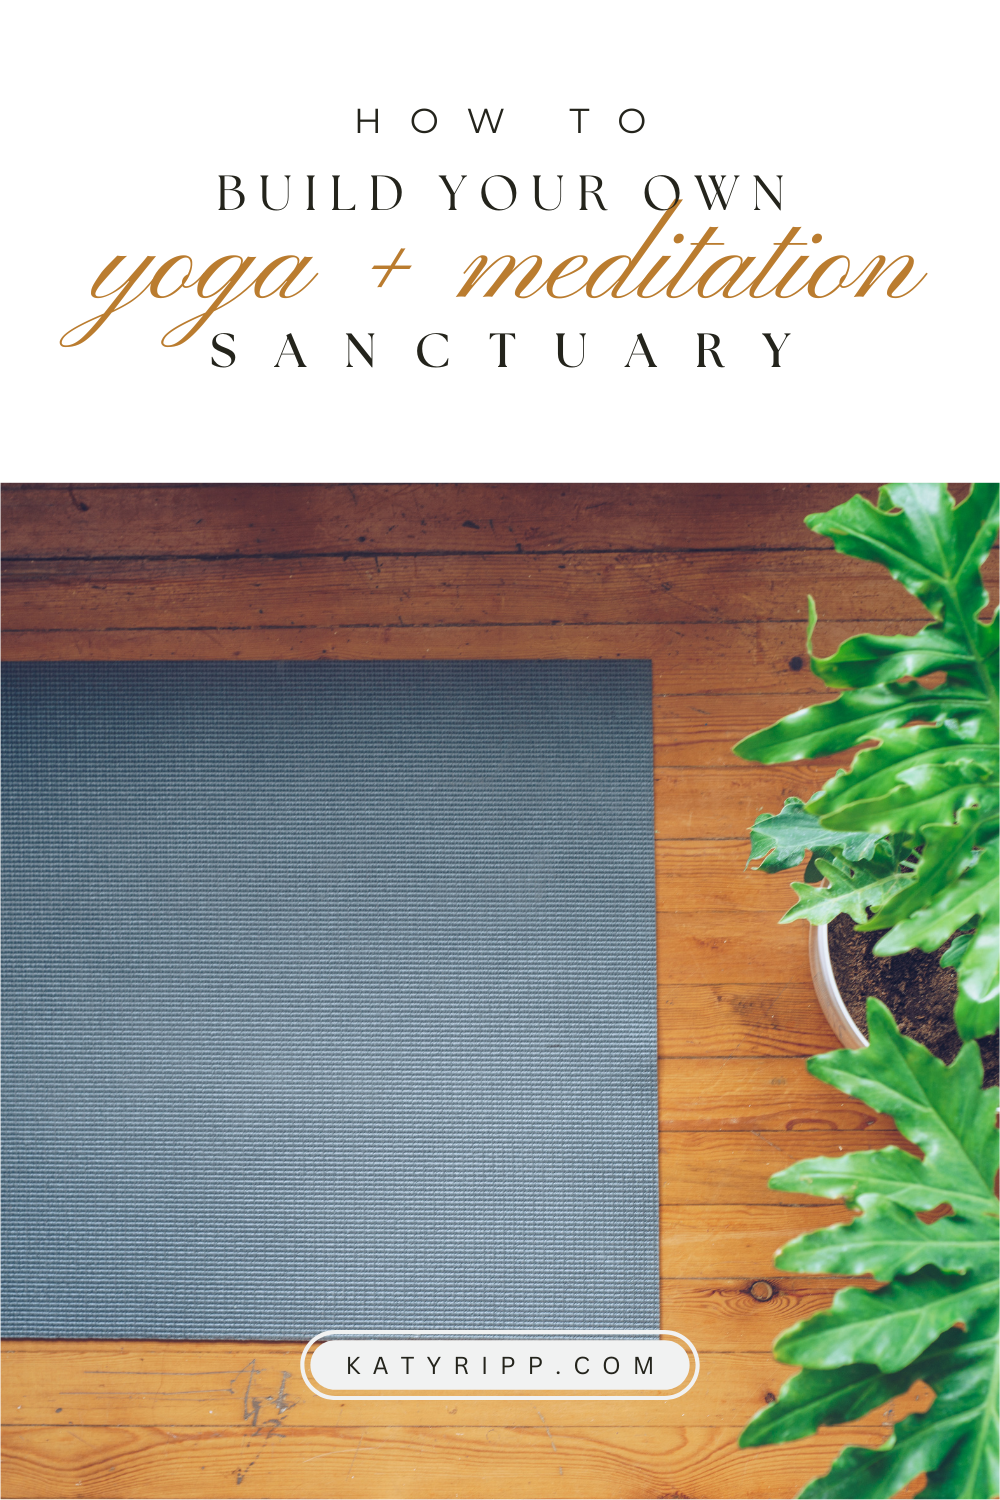 Build your own yoga sanctuary.